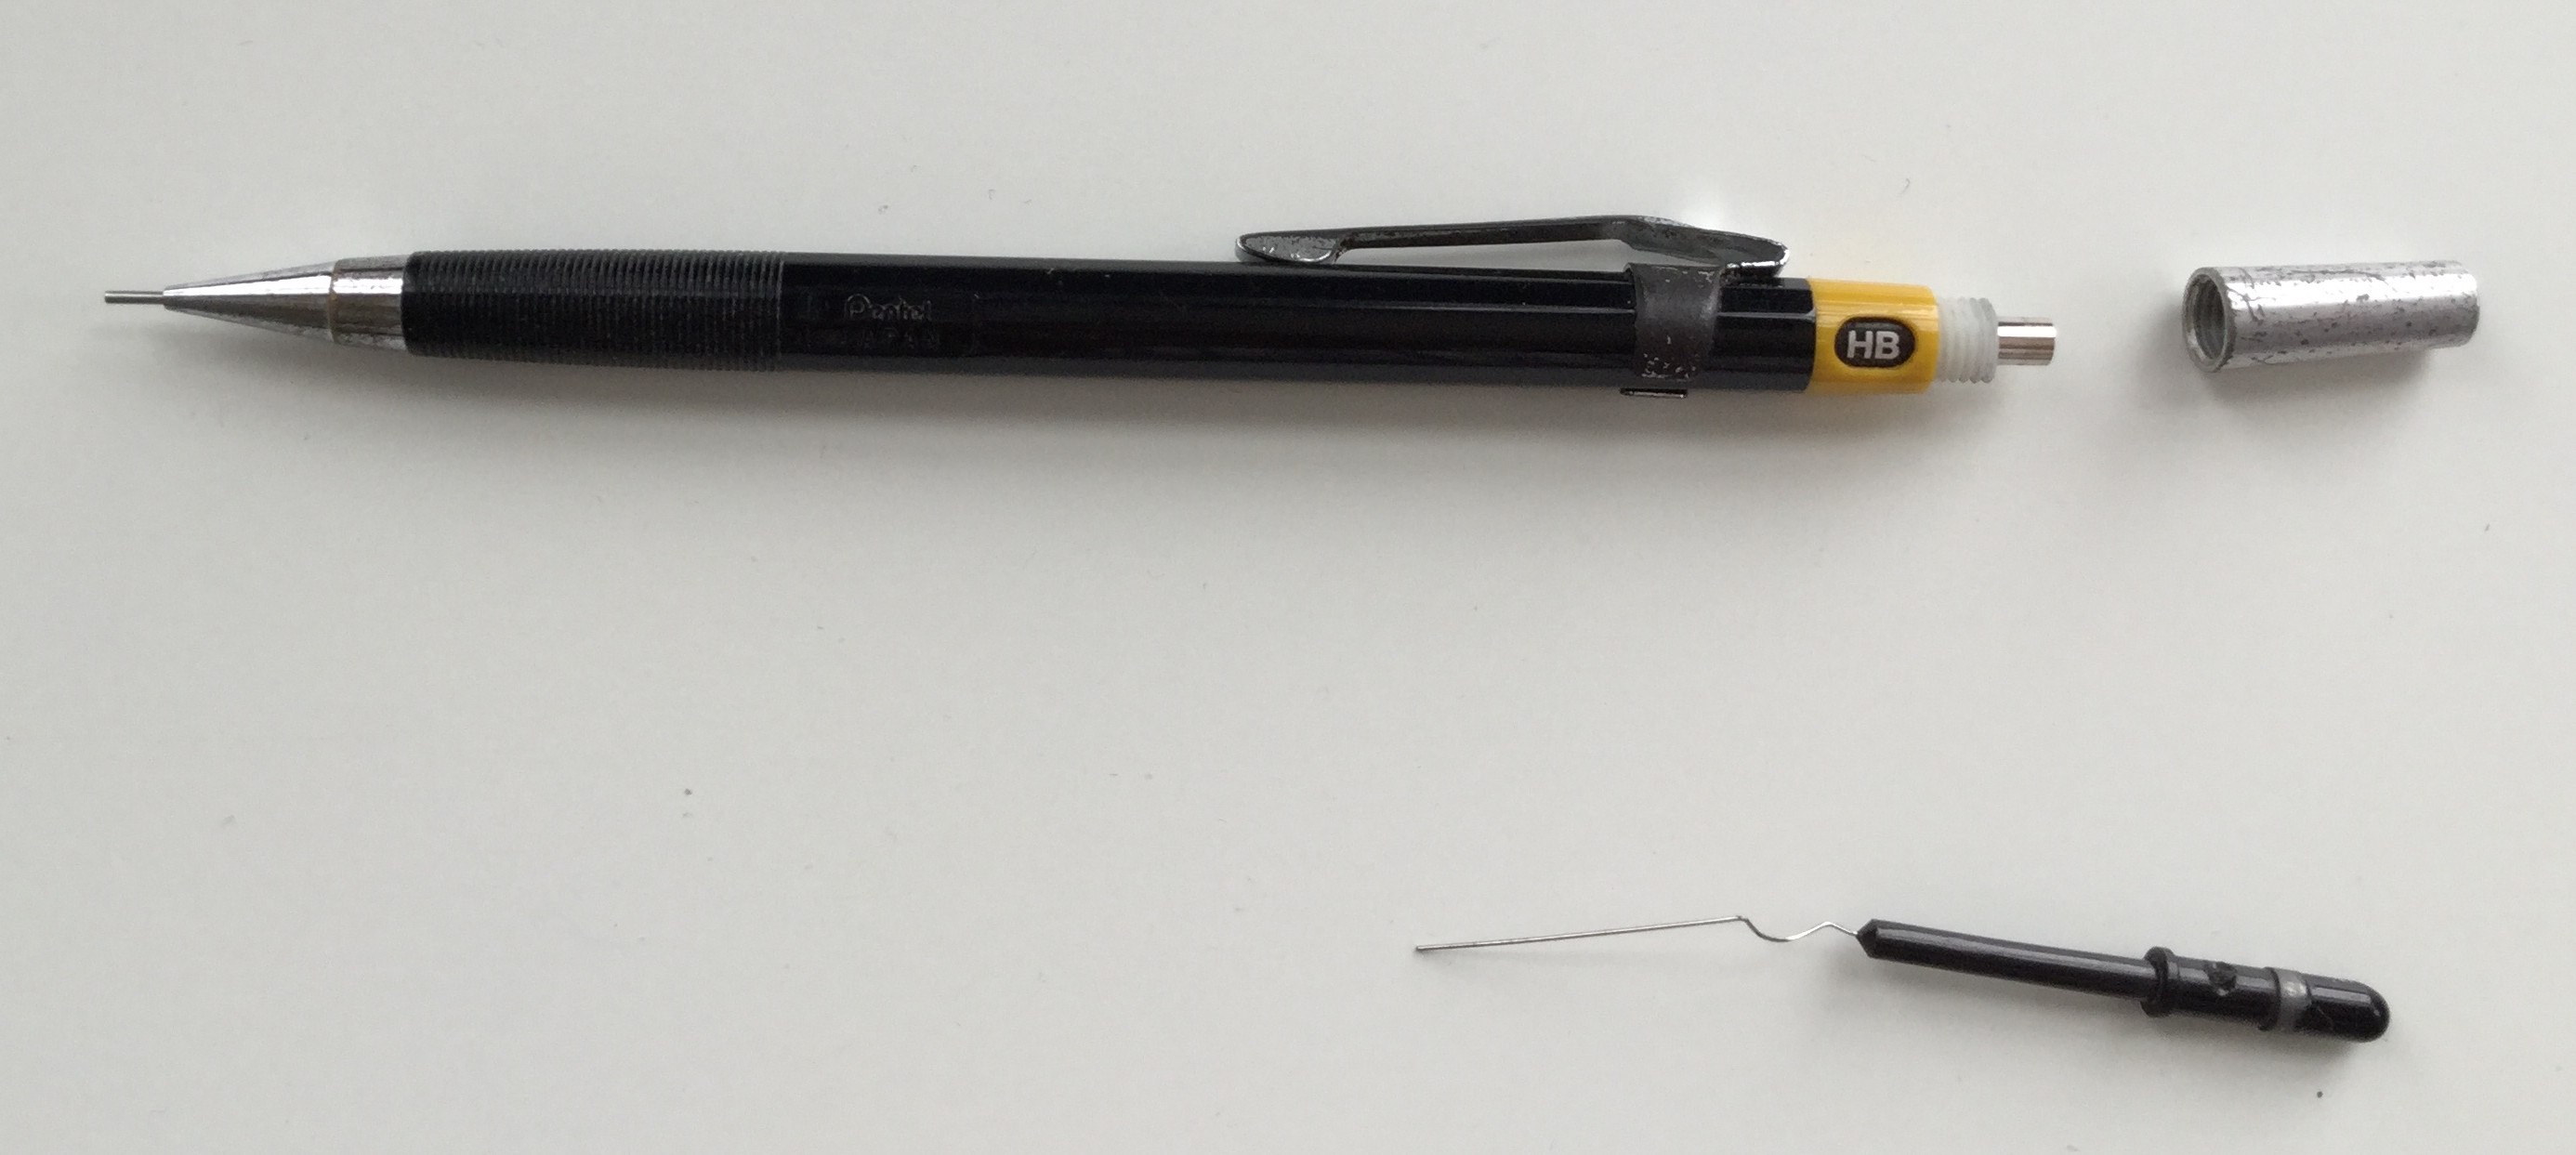 シャープペンシルを修理 原因はシャーペンの芯詰まりでした | Citron